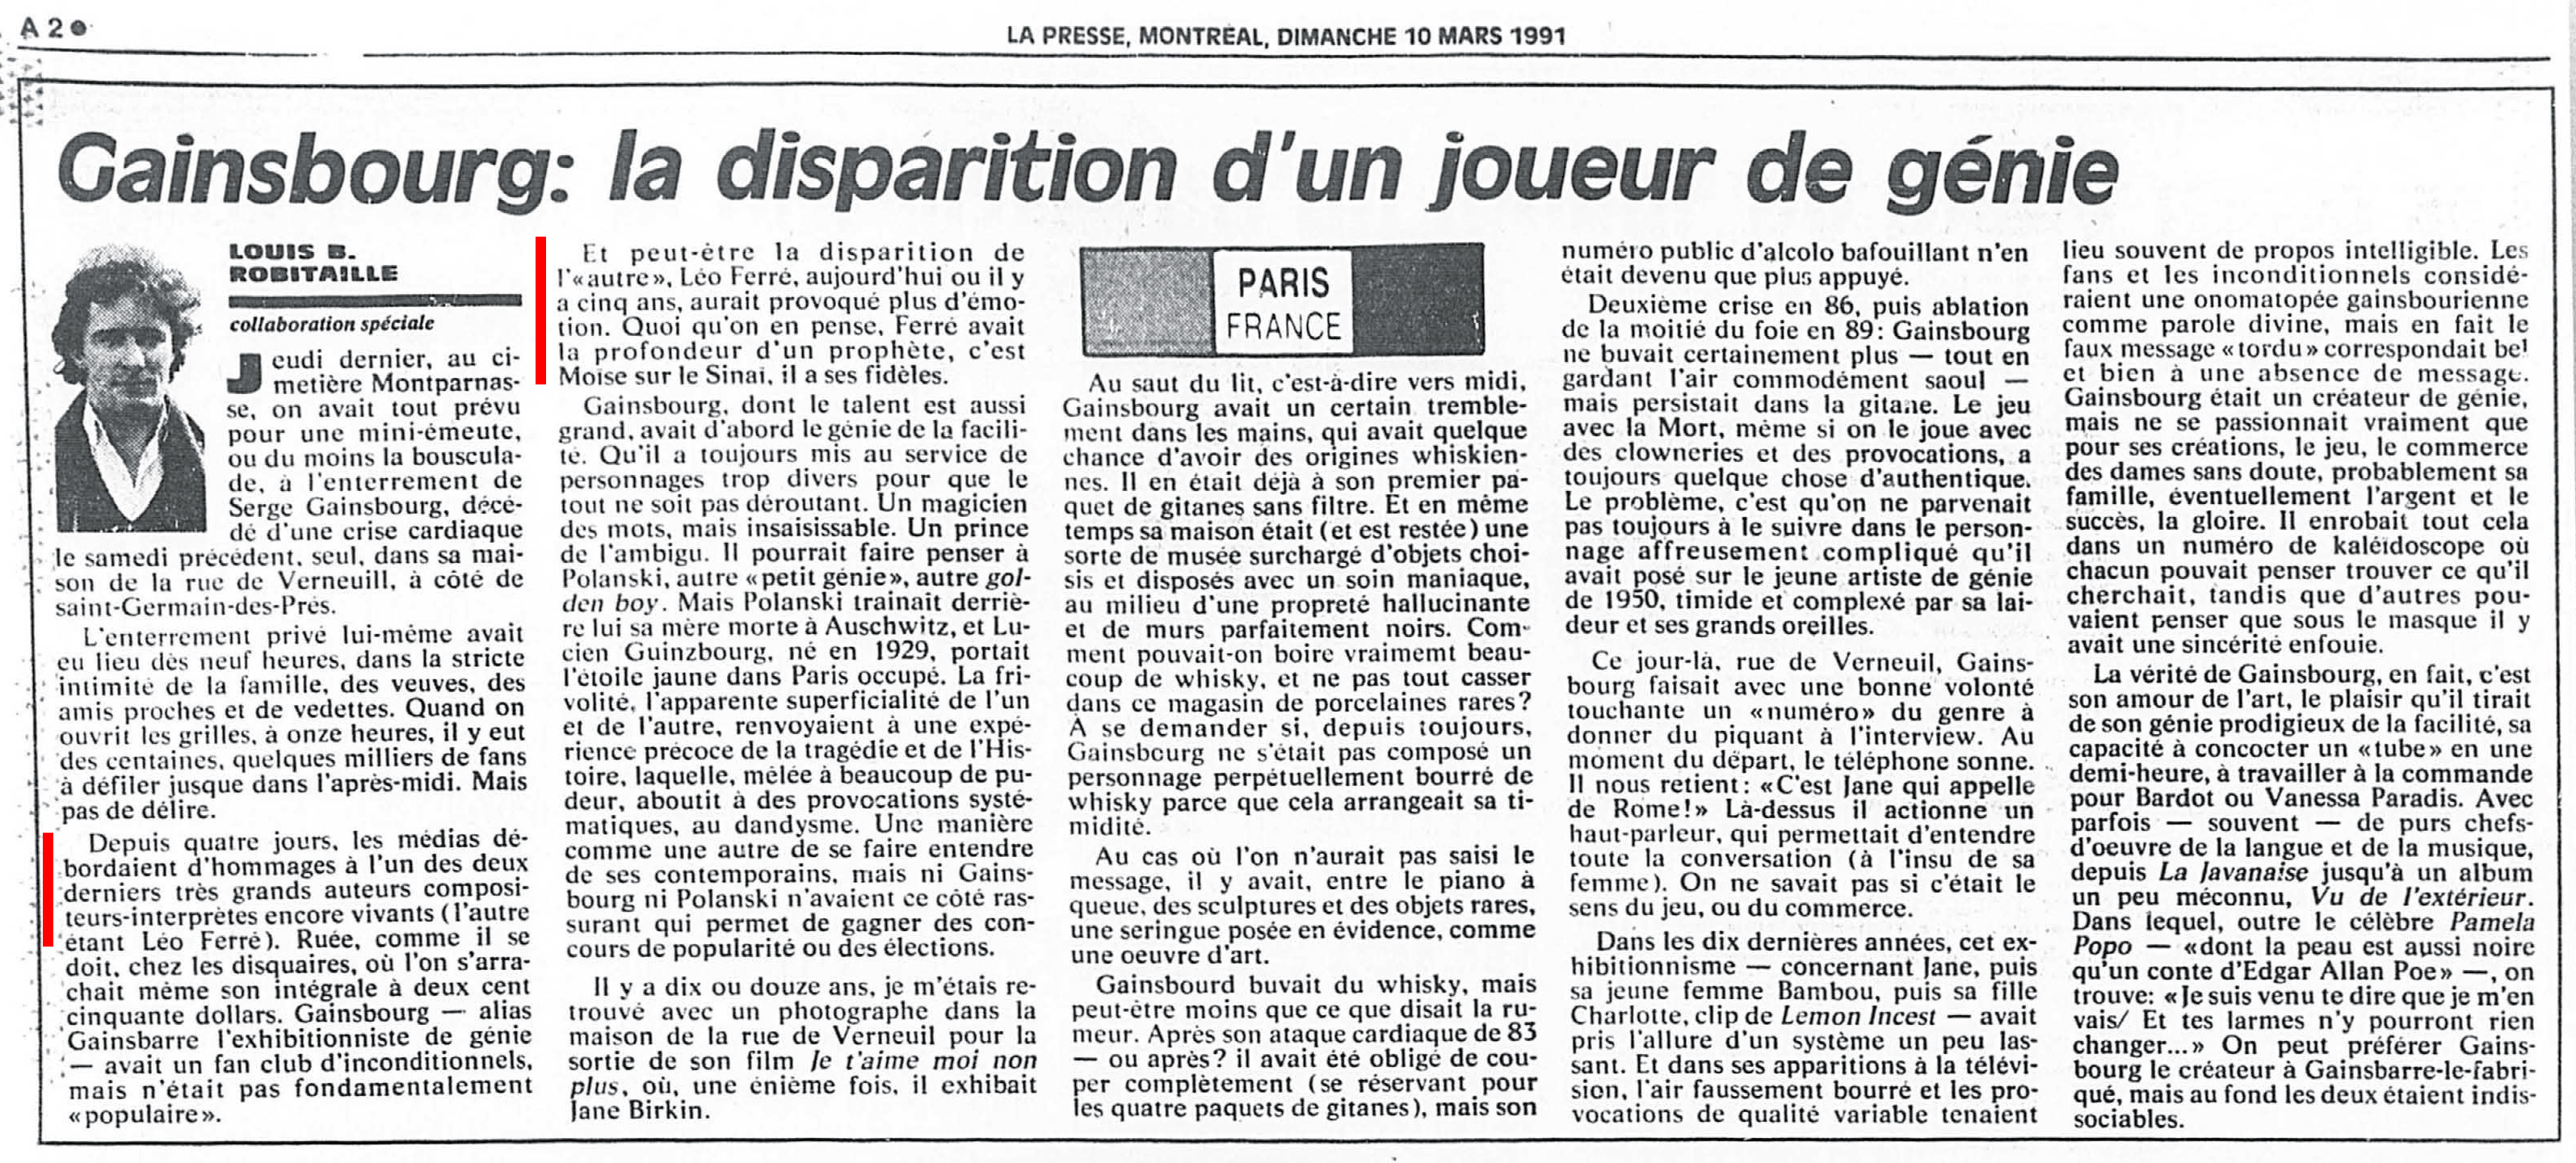 Léo Ferré - La Presse, 10 mars 1991, Cahier A